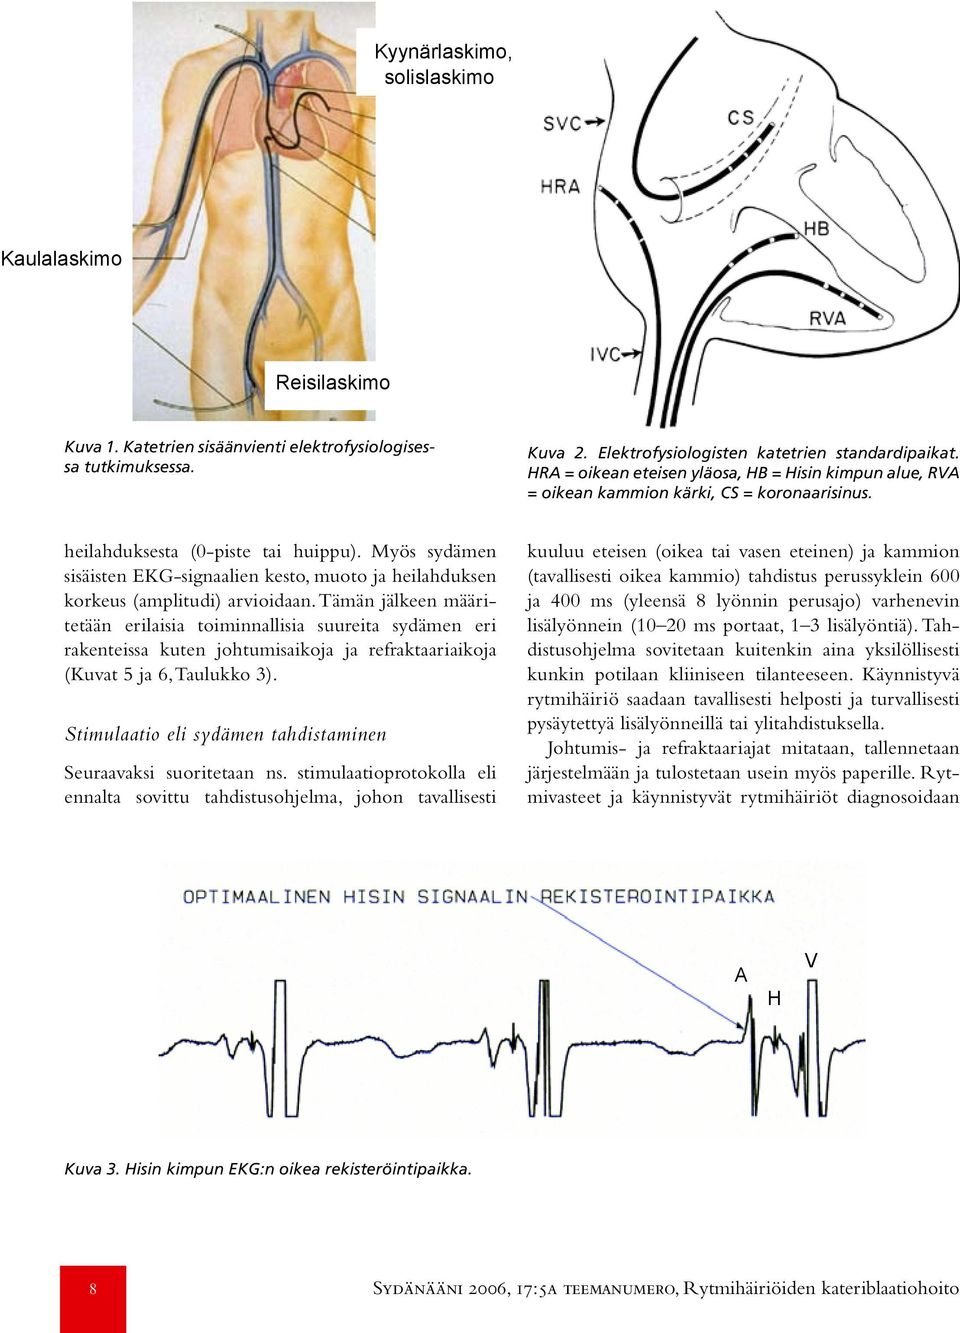 Myös sydämen sisäisten EKG-signaalien kesto, muoto ja heilahduksen korkeus (amplitudi) arvioidaan.